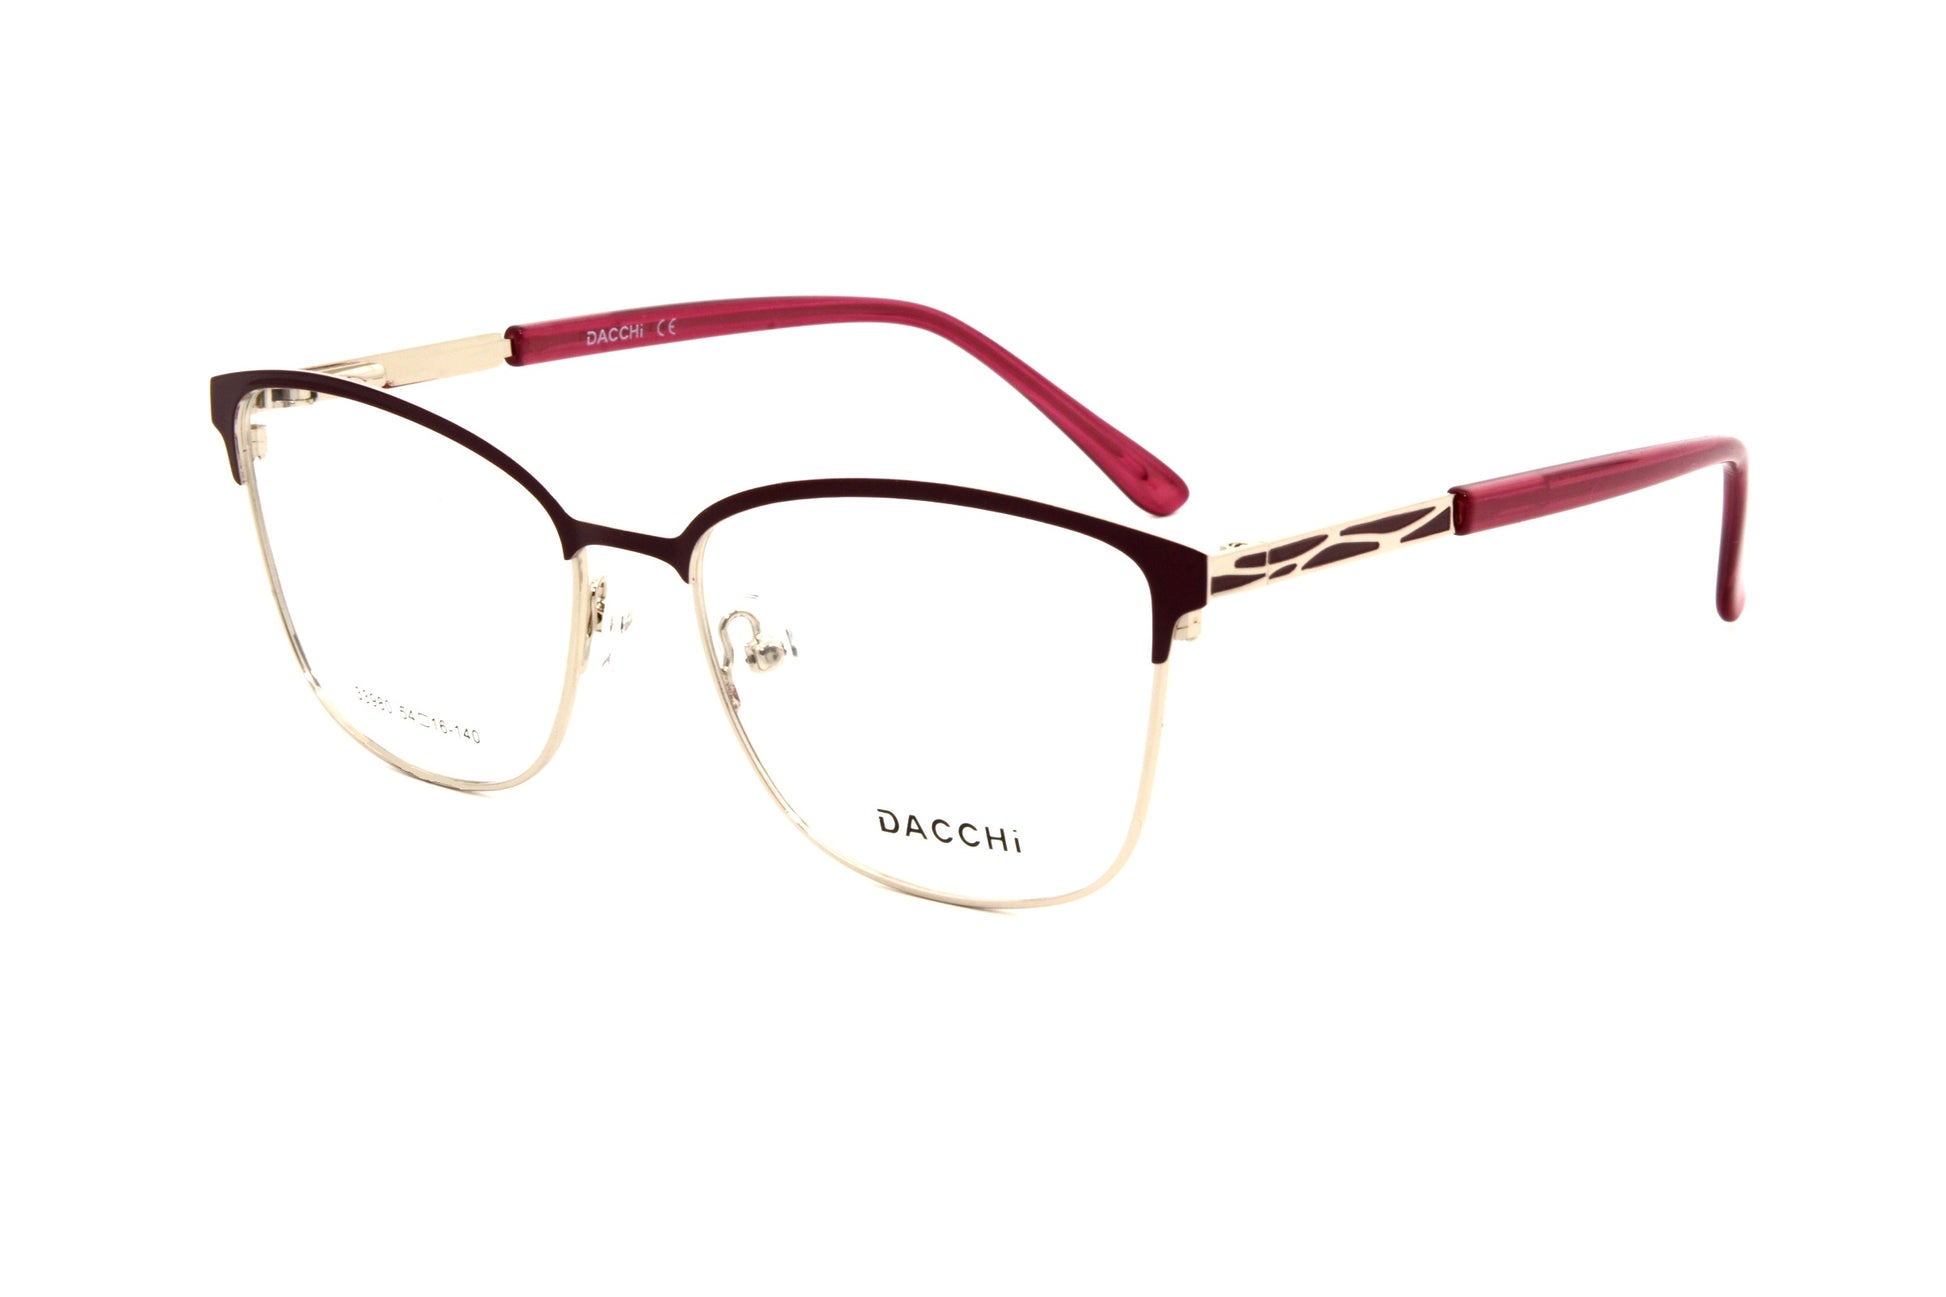 Dacchi eyewear D33980 C4